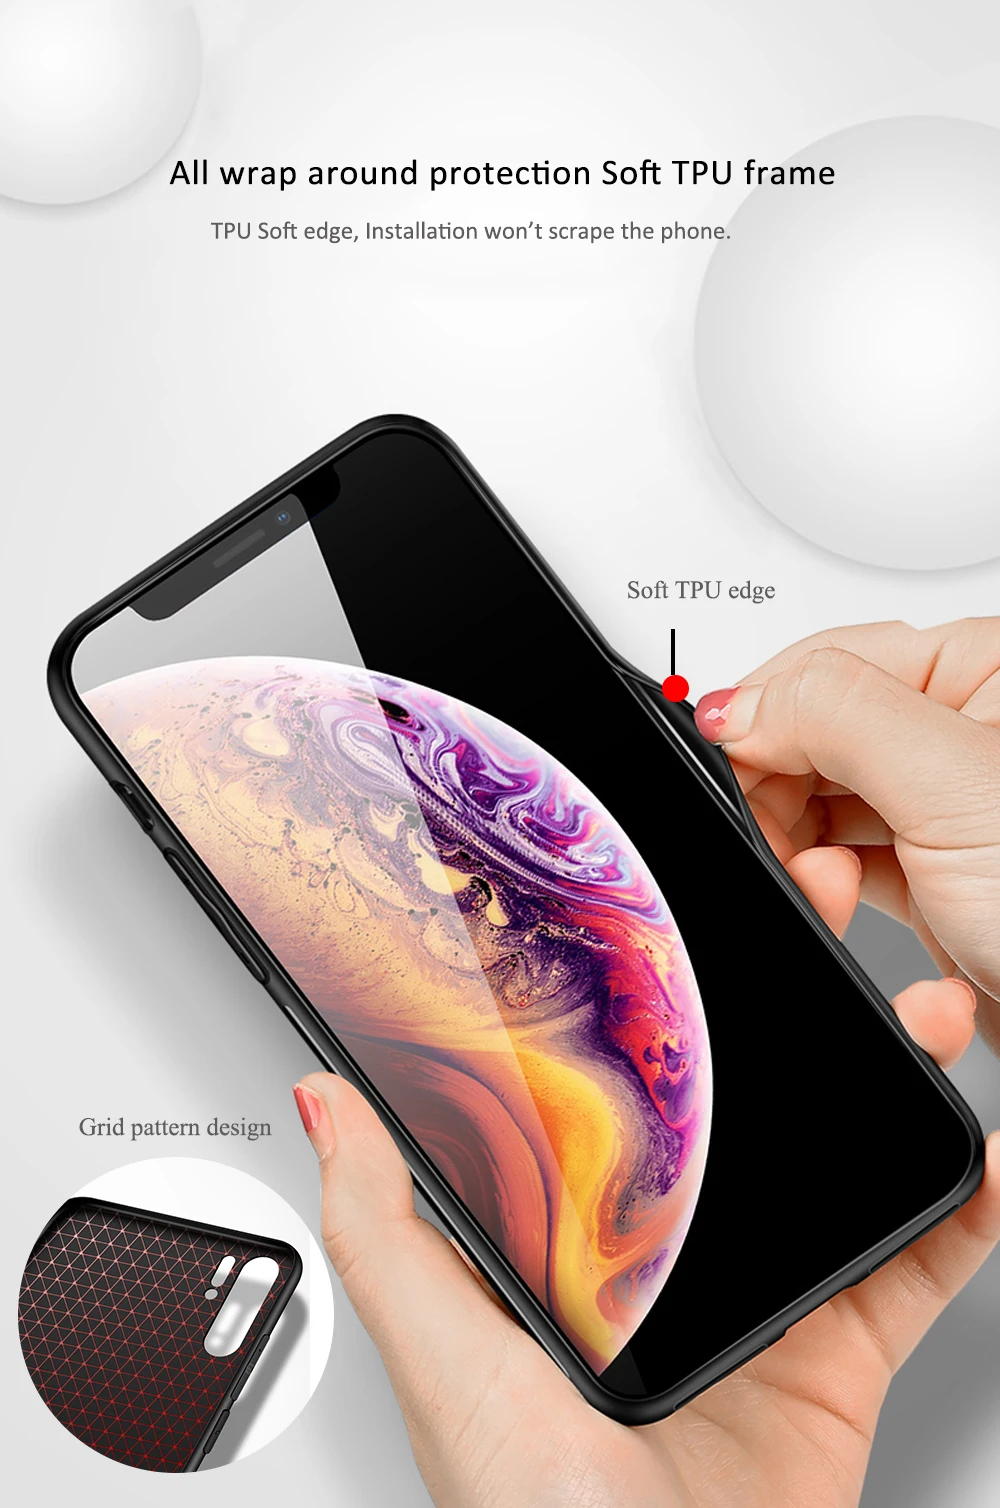 Для iphone 11 чехол стеклянная задняя крышка из аниме Goku dragon ball super case iphone x чехол для iphone 6 6s 7 8 Plus X XS Max XR 11 pro